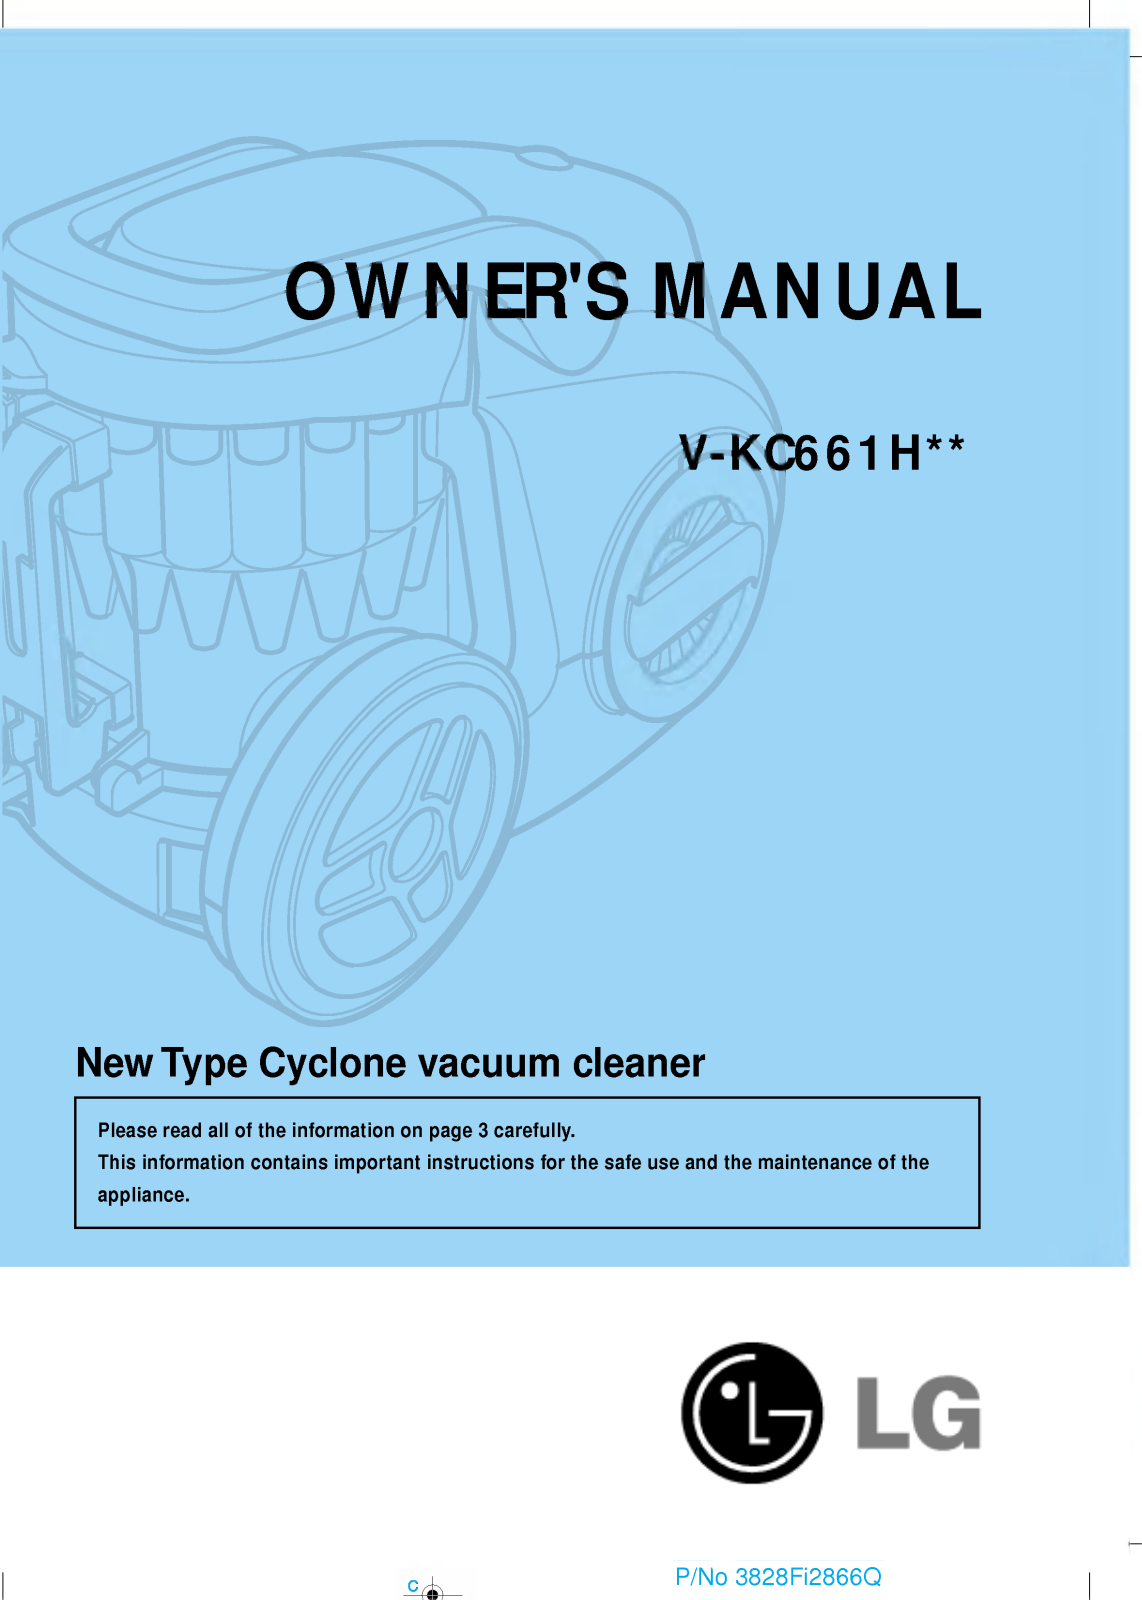 LG V-KC661HTU Owner’s Manual